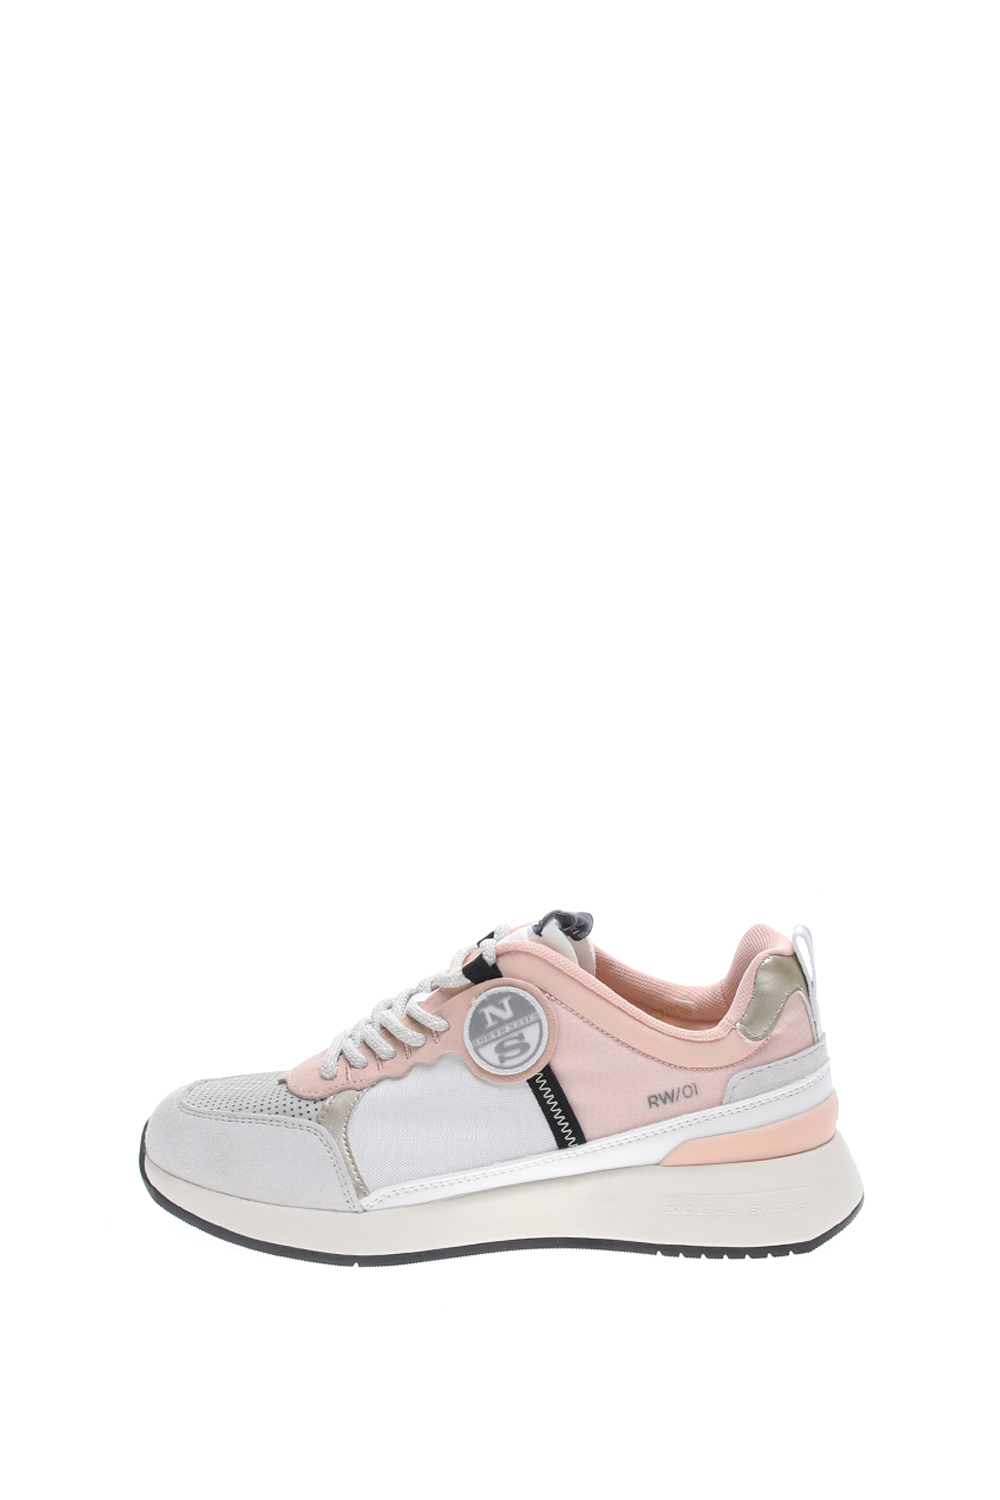 Γυναικεία/Παπούτσια/Sneakers NORTH SAILS - Γυναικεία sneakers NORTH SAILS SWIM λευκά ροζ